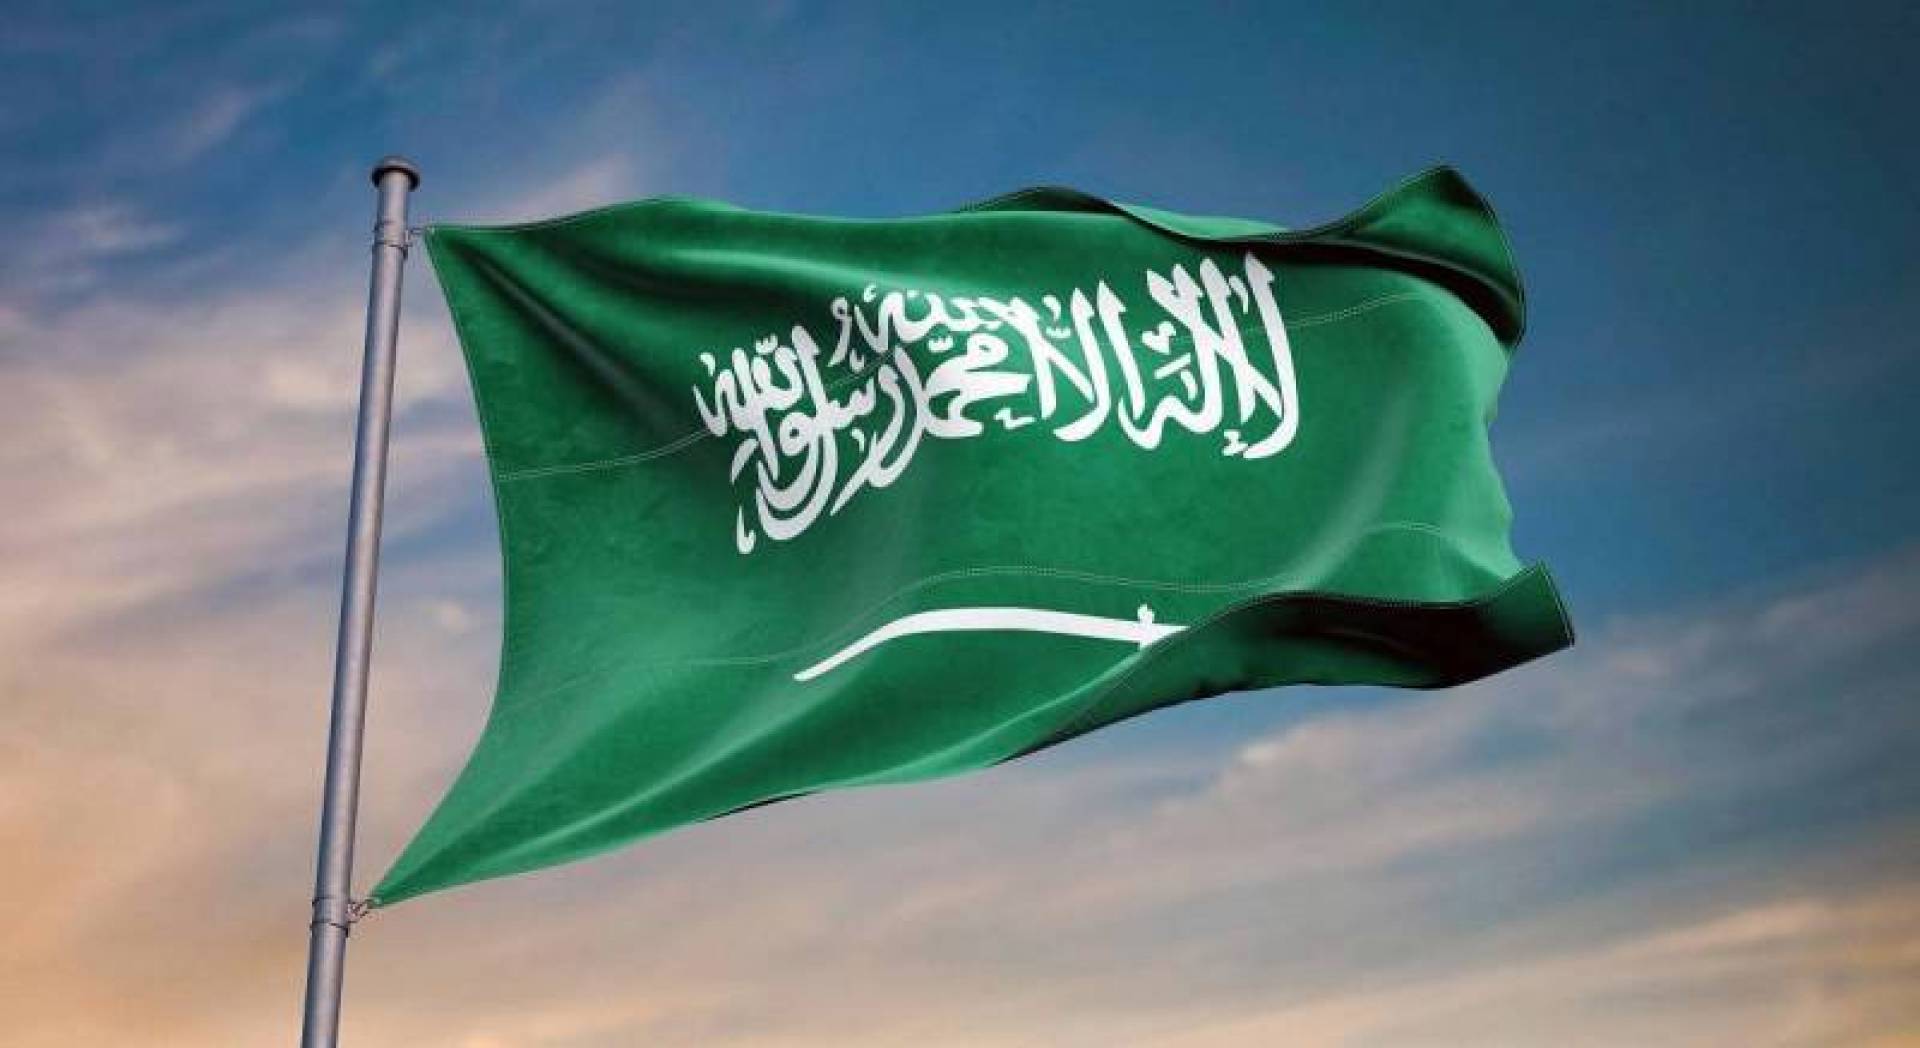 خطة العودة بالسعودية والإجراءات الاحترازية في مكة المكرمة ودليل